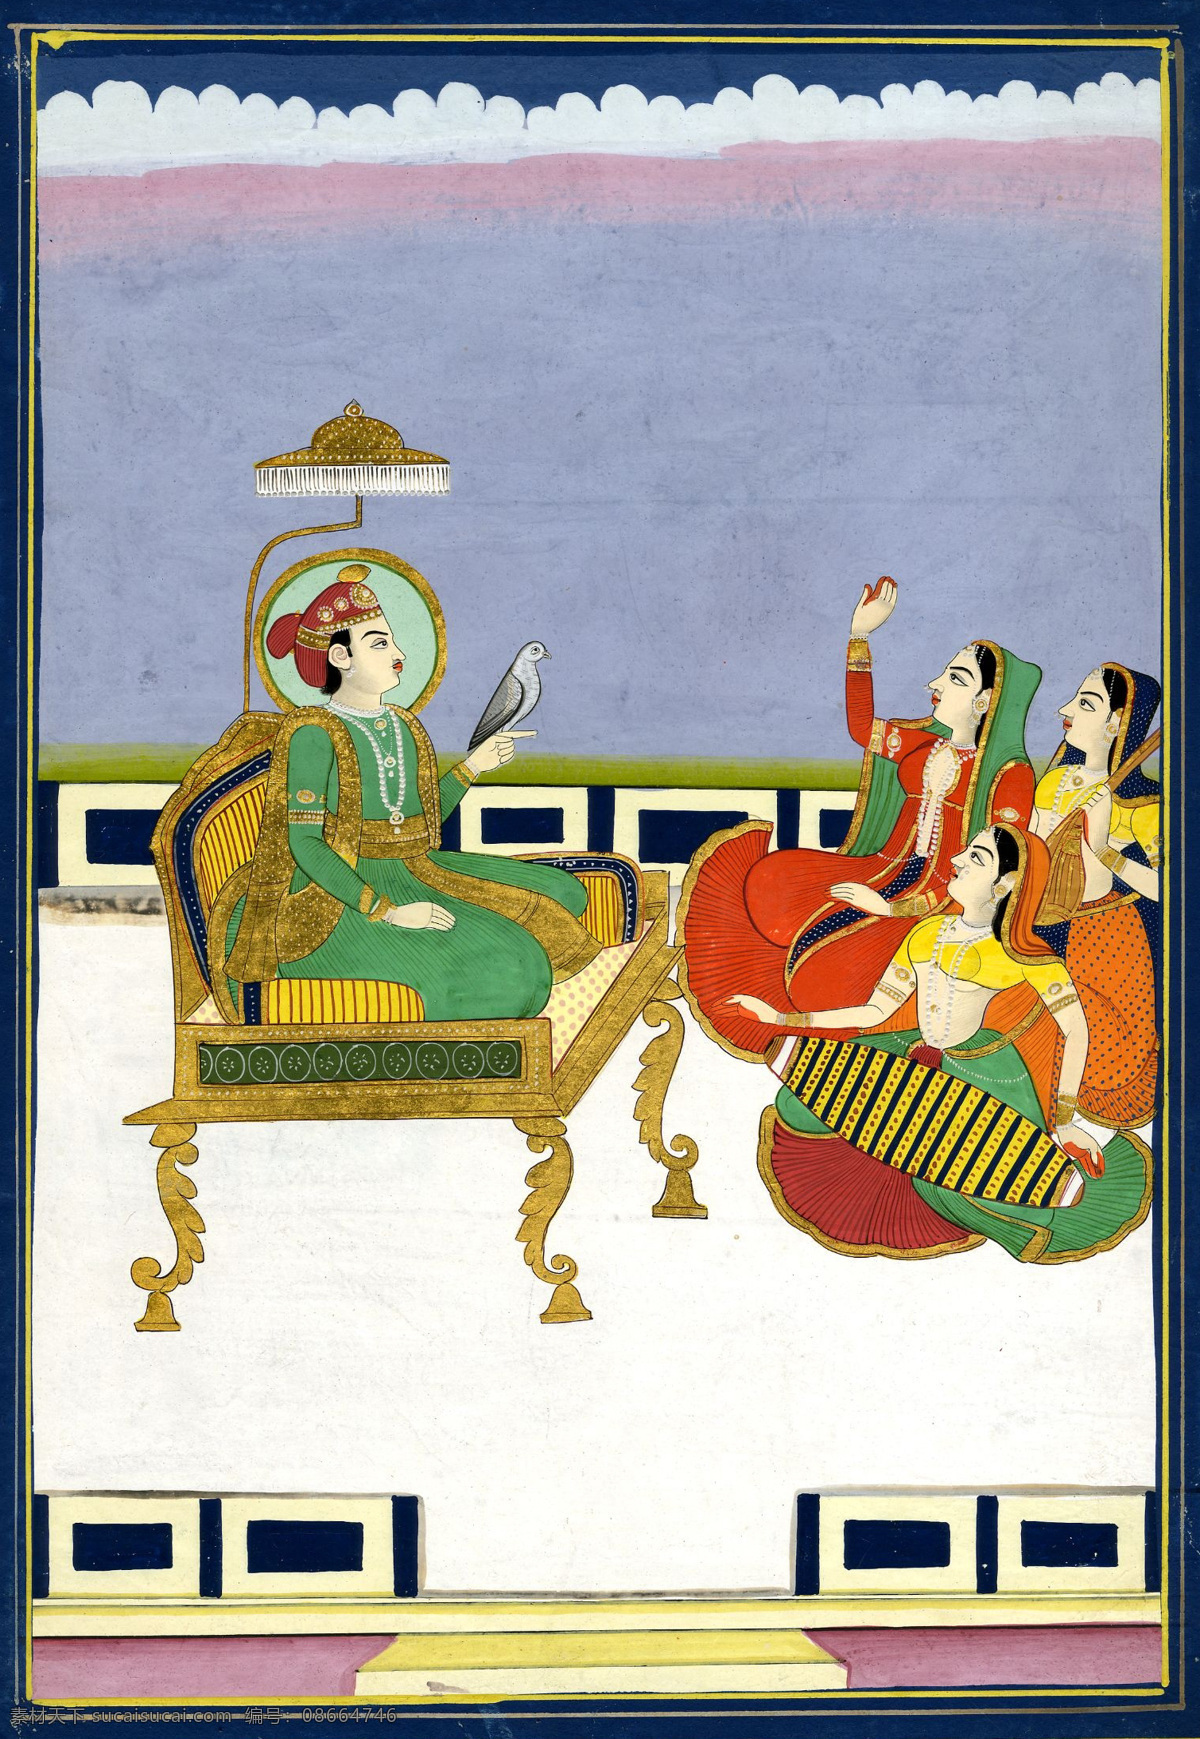 宫廷舞蹈 印度绘画 19世纪绘画 世界名画 绘画书法 文化艺术 白色